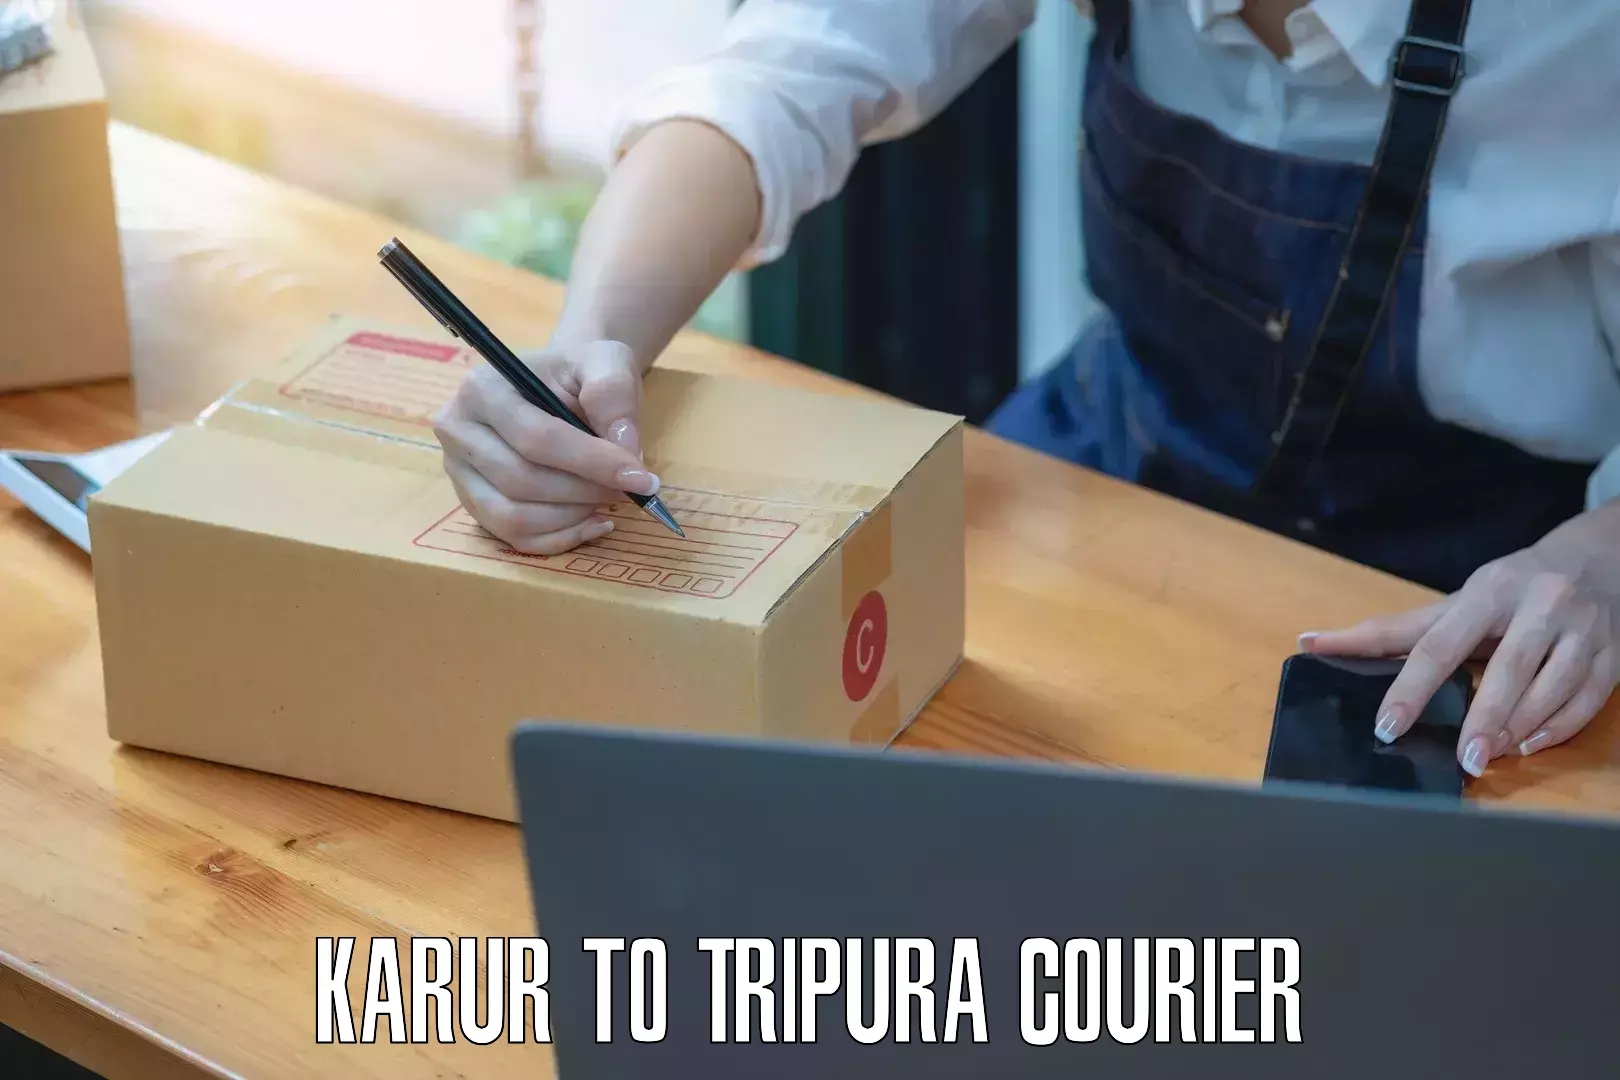 Affordable parcel service Karur to Amarpur